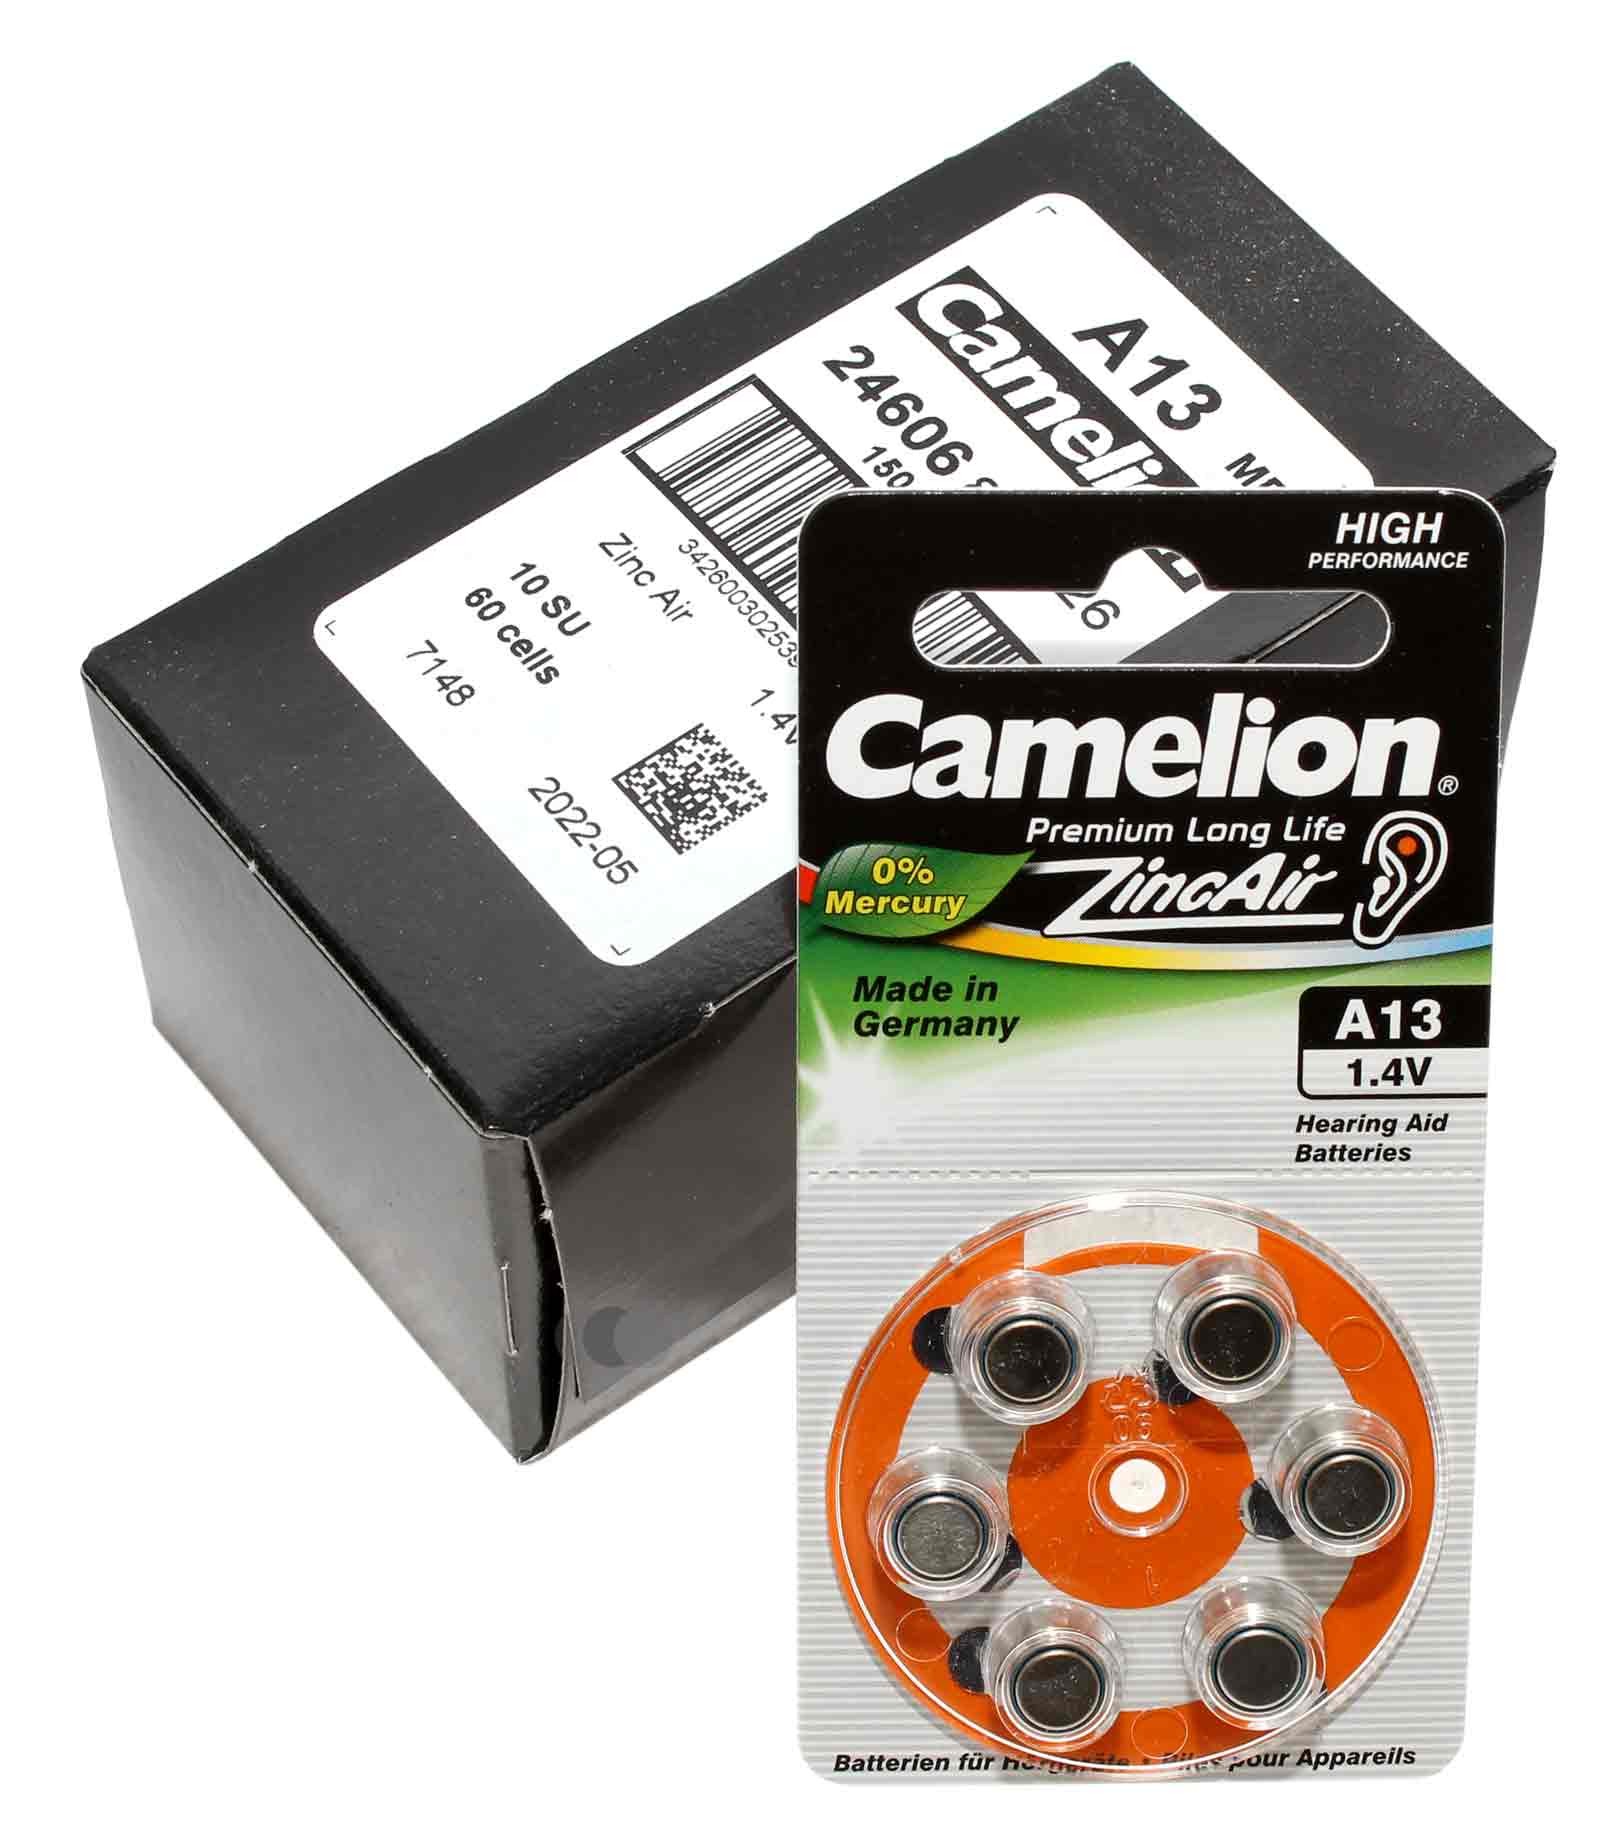 60 Stück Camelion Knopfzelle (Batterie) A312, PR41, [A312-BP6], für Hörgeräte (hearing aid / appareils auditifs), Zink-Luft mit 1,4V und 160mAh